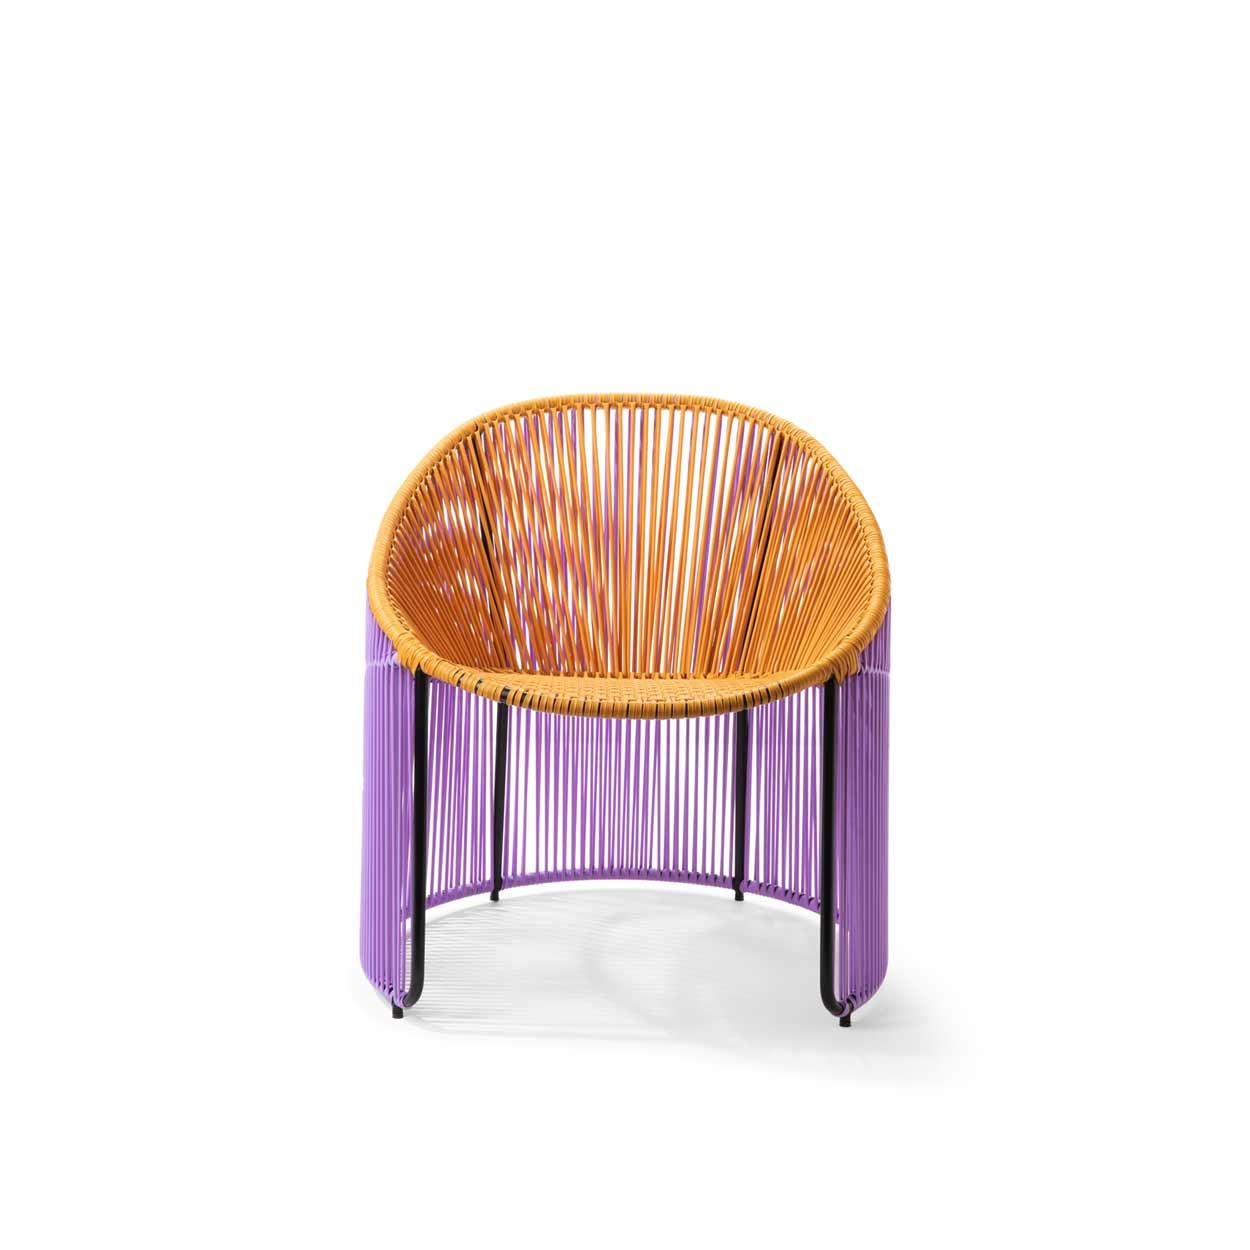 Les couleurs et la forme de la chaise longue Cartagenas sont inspirées de la visite de Sebastian Herkner à Cartagena de Indias, ville côtière animée de Colombie. 